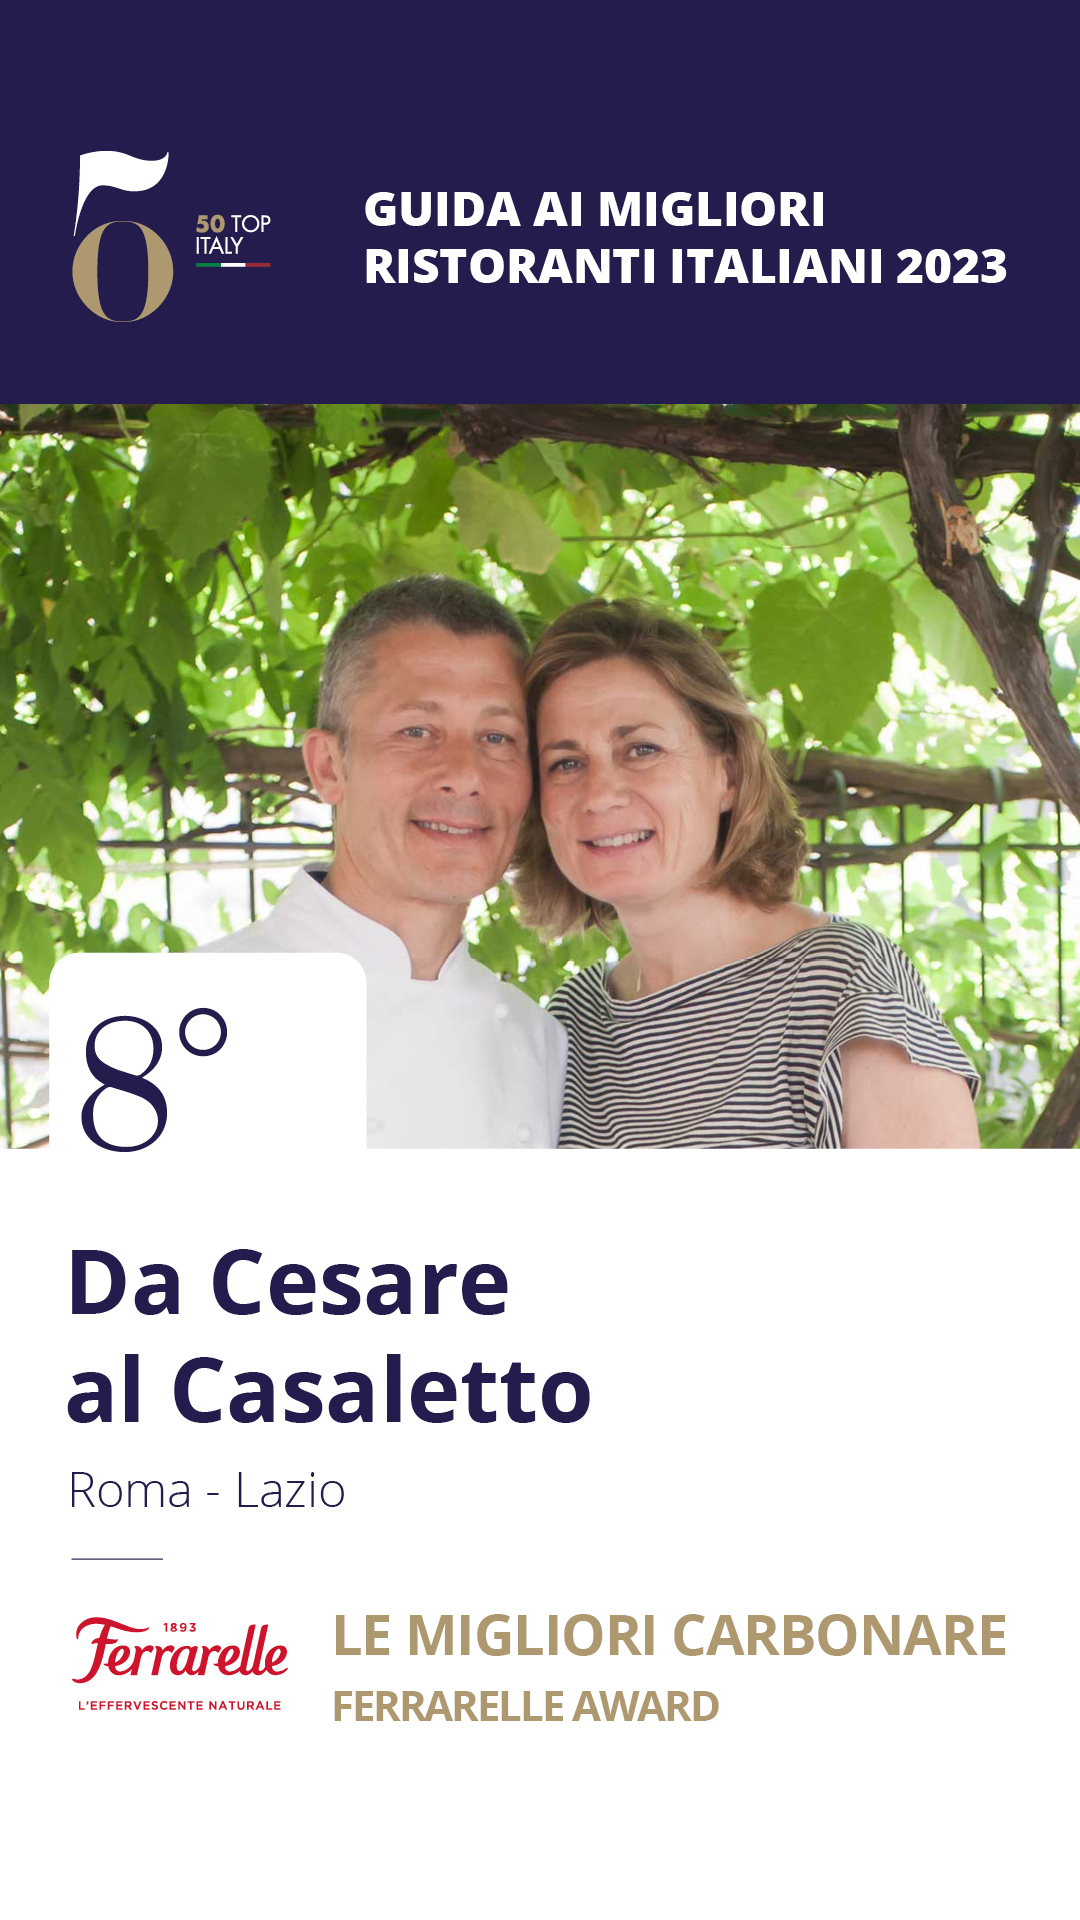 8 - Da Cesare al Casaletto- Roma, Lazio